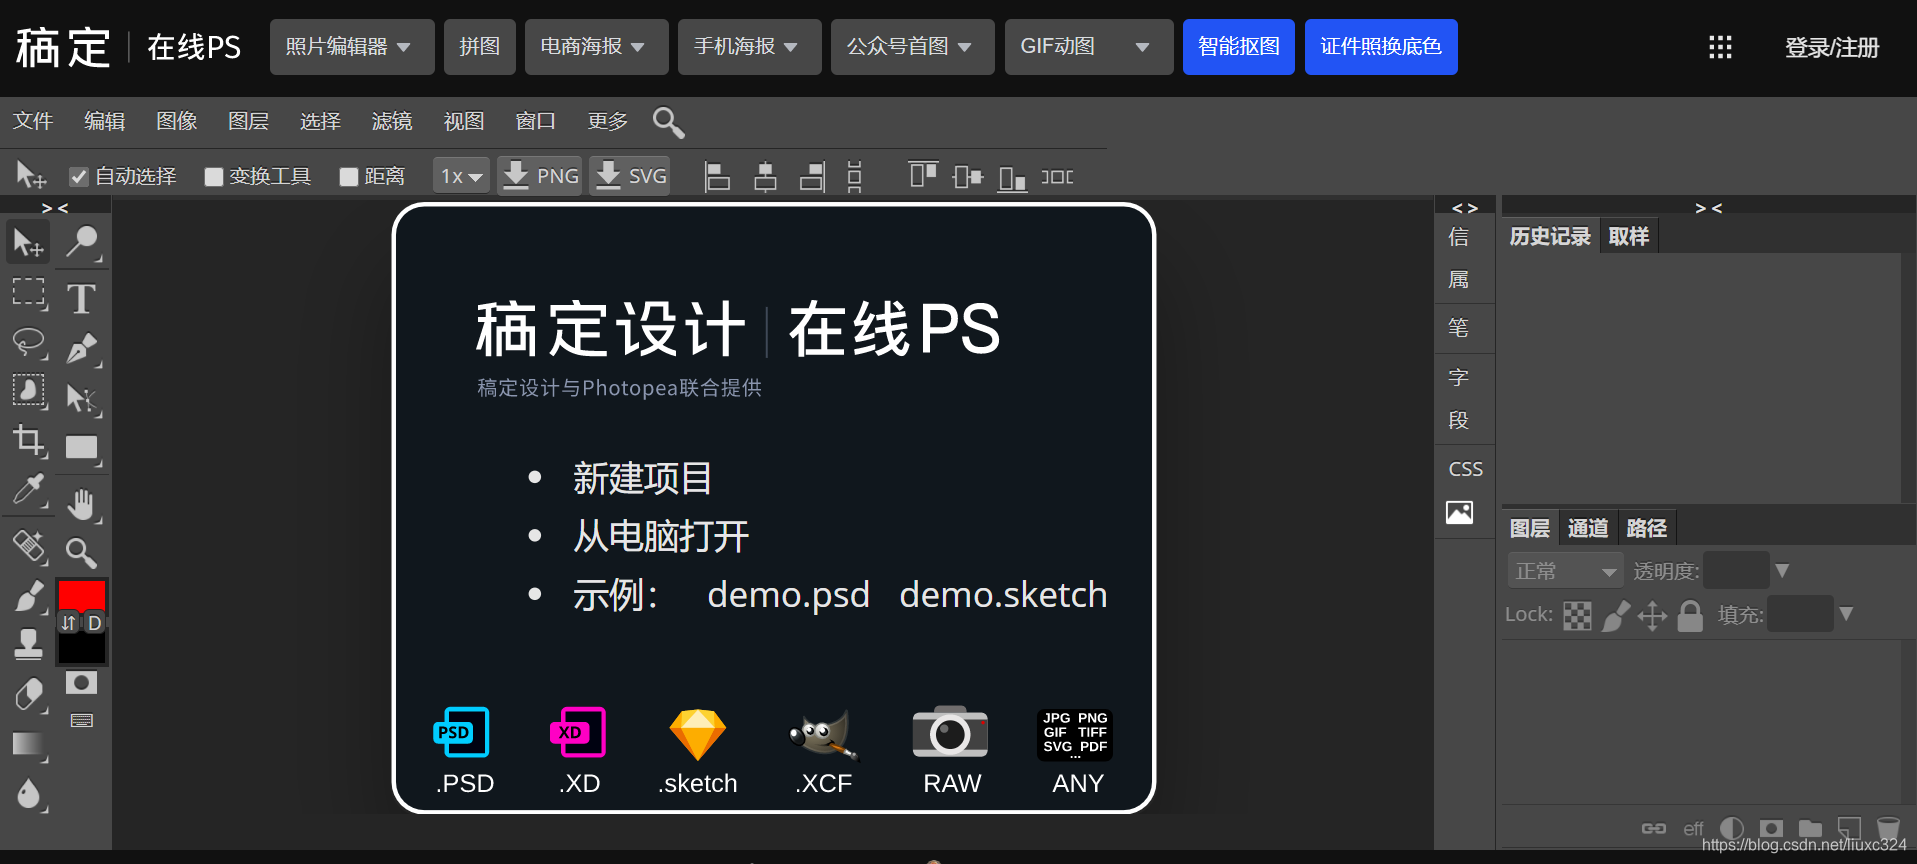 在线PS软件 Photoshop网页版-稿定设计 - A姐分享